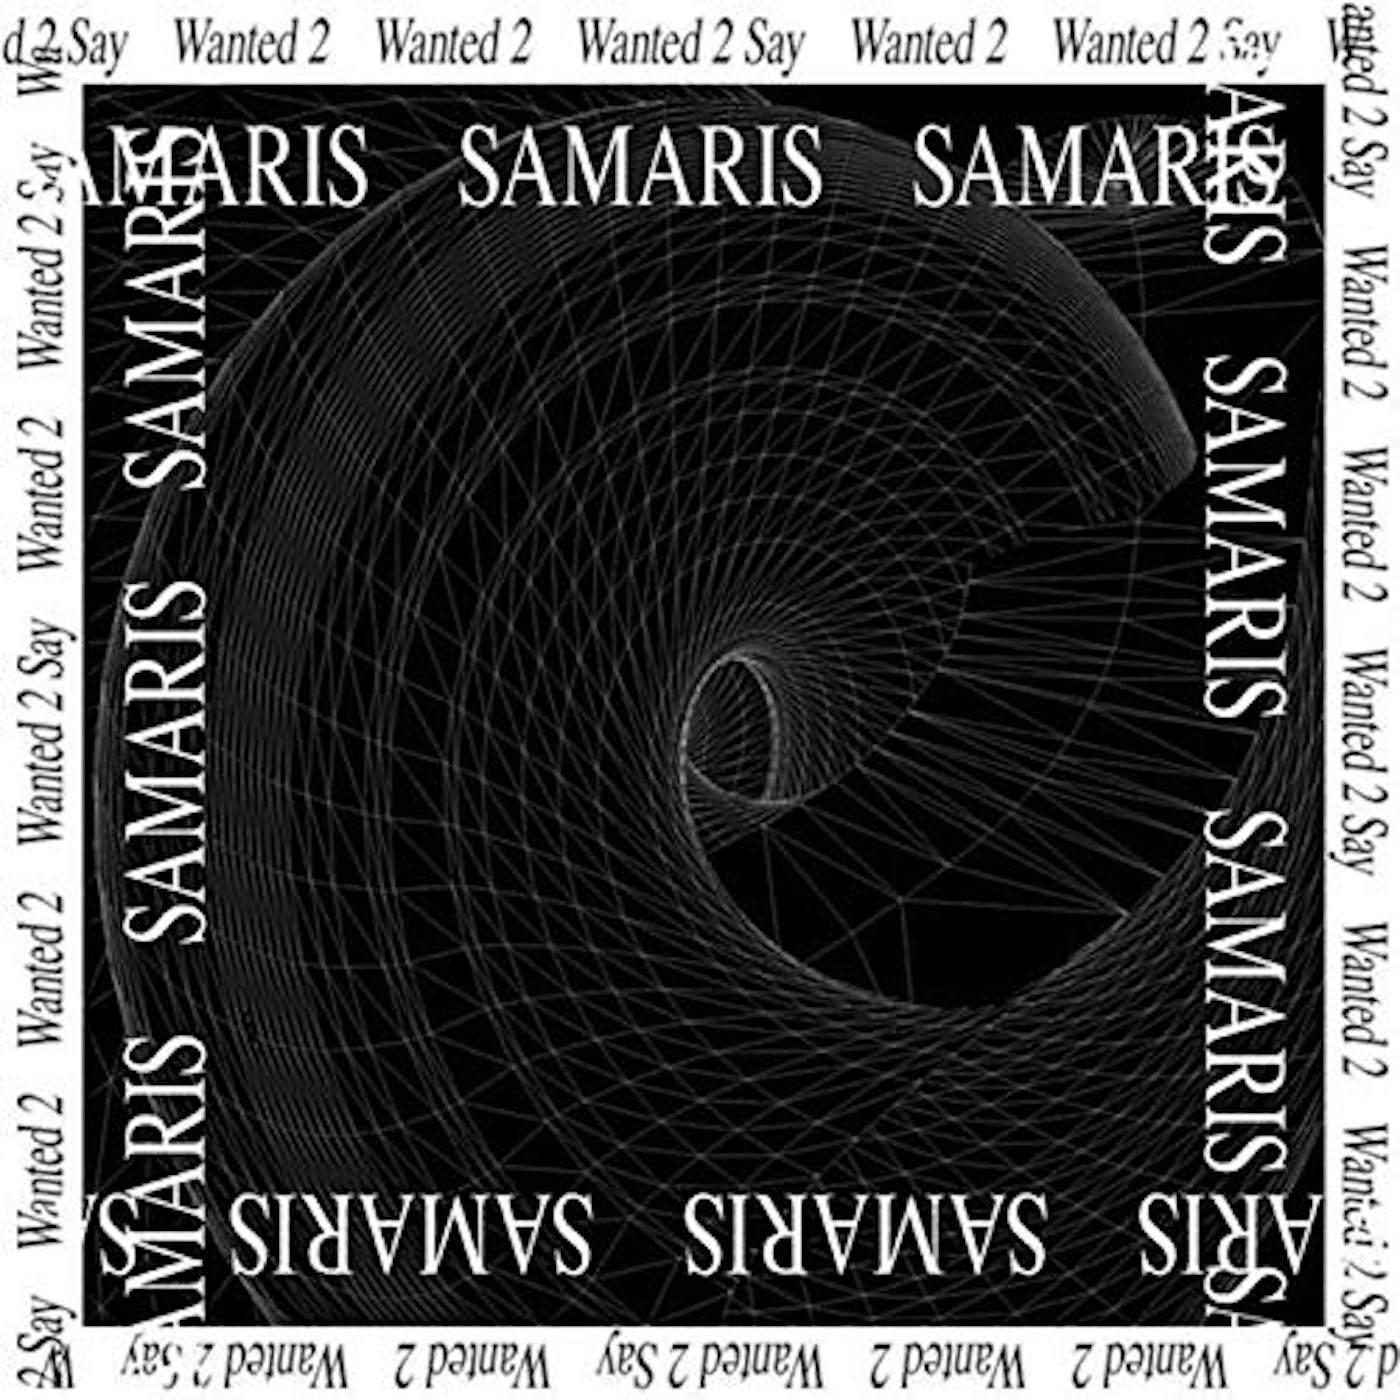 Samaris Wanted 2 say Vinyl Record